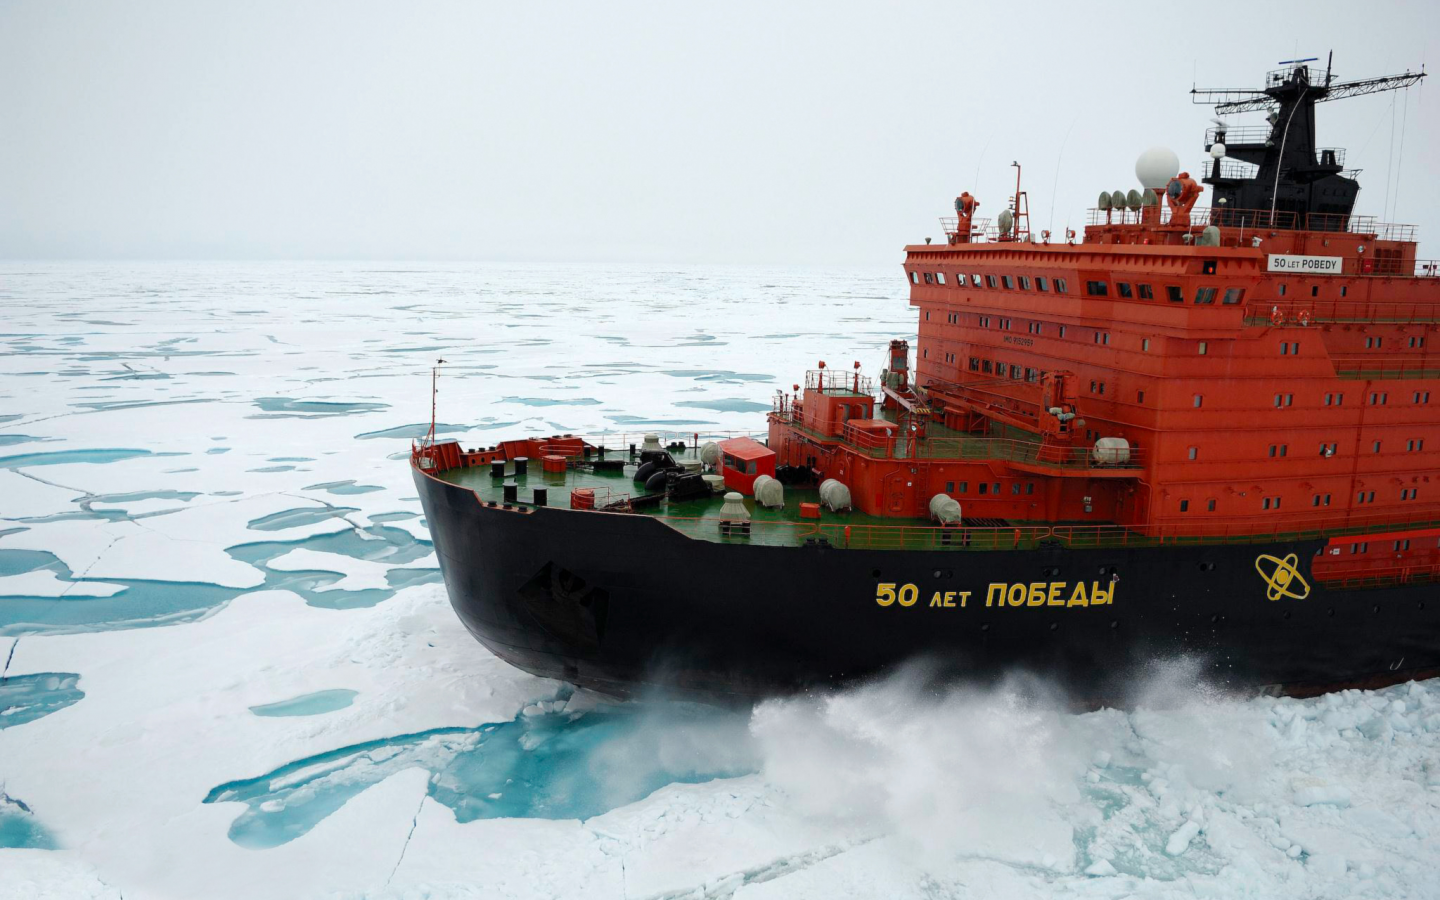 класса арктика, атомный ледокол, 50 лет победы, россия